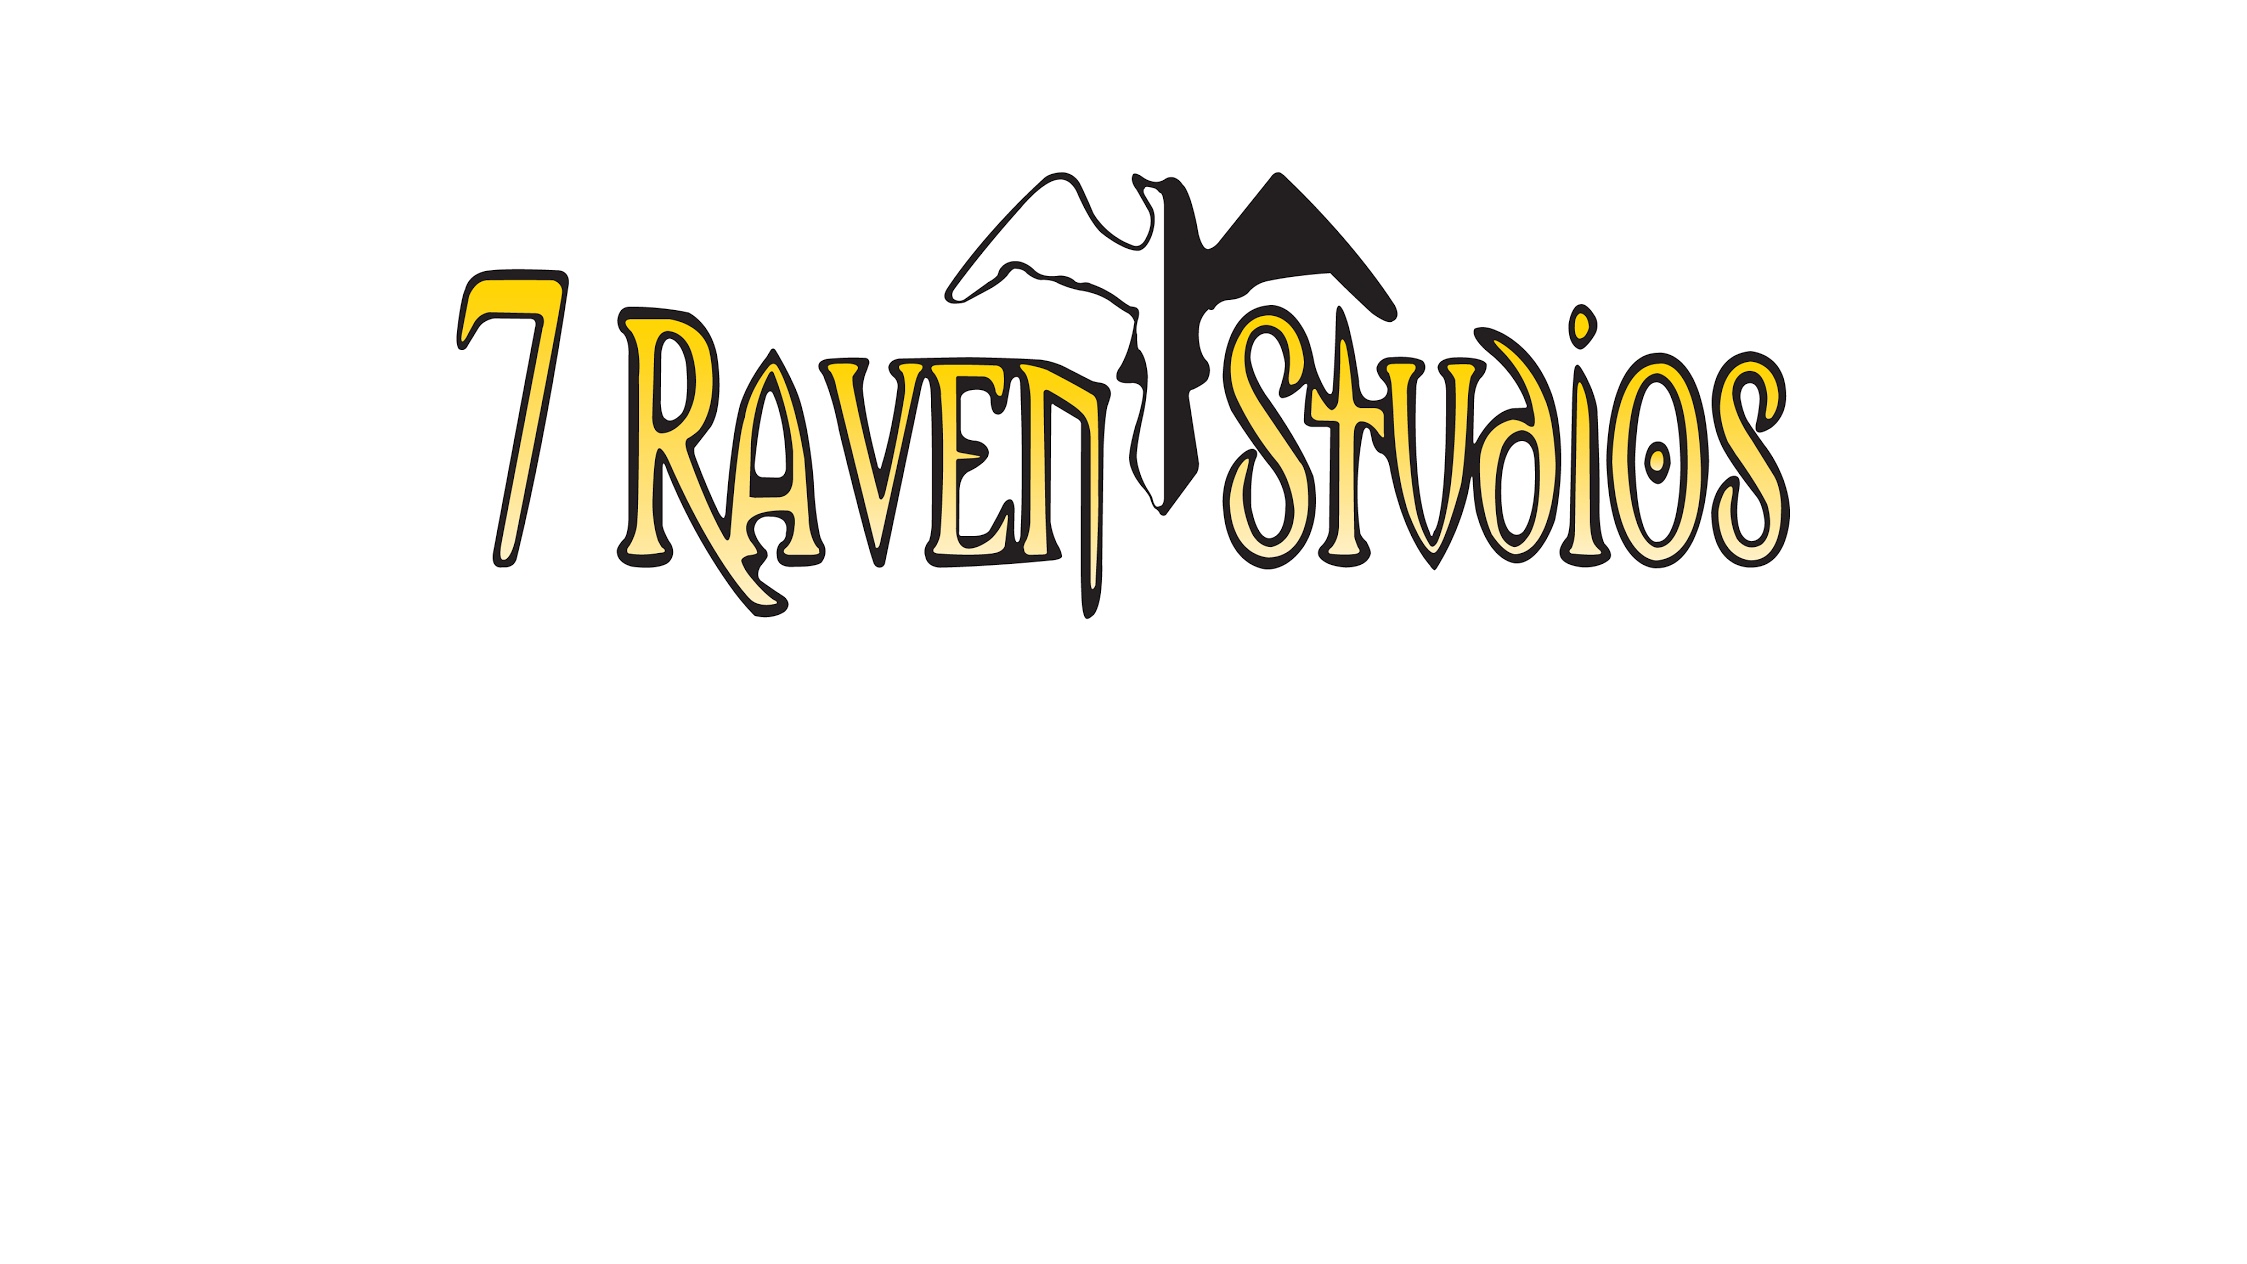 7 Raven Studios